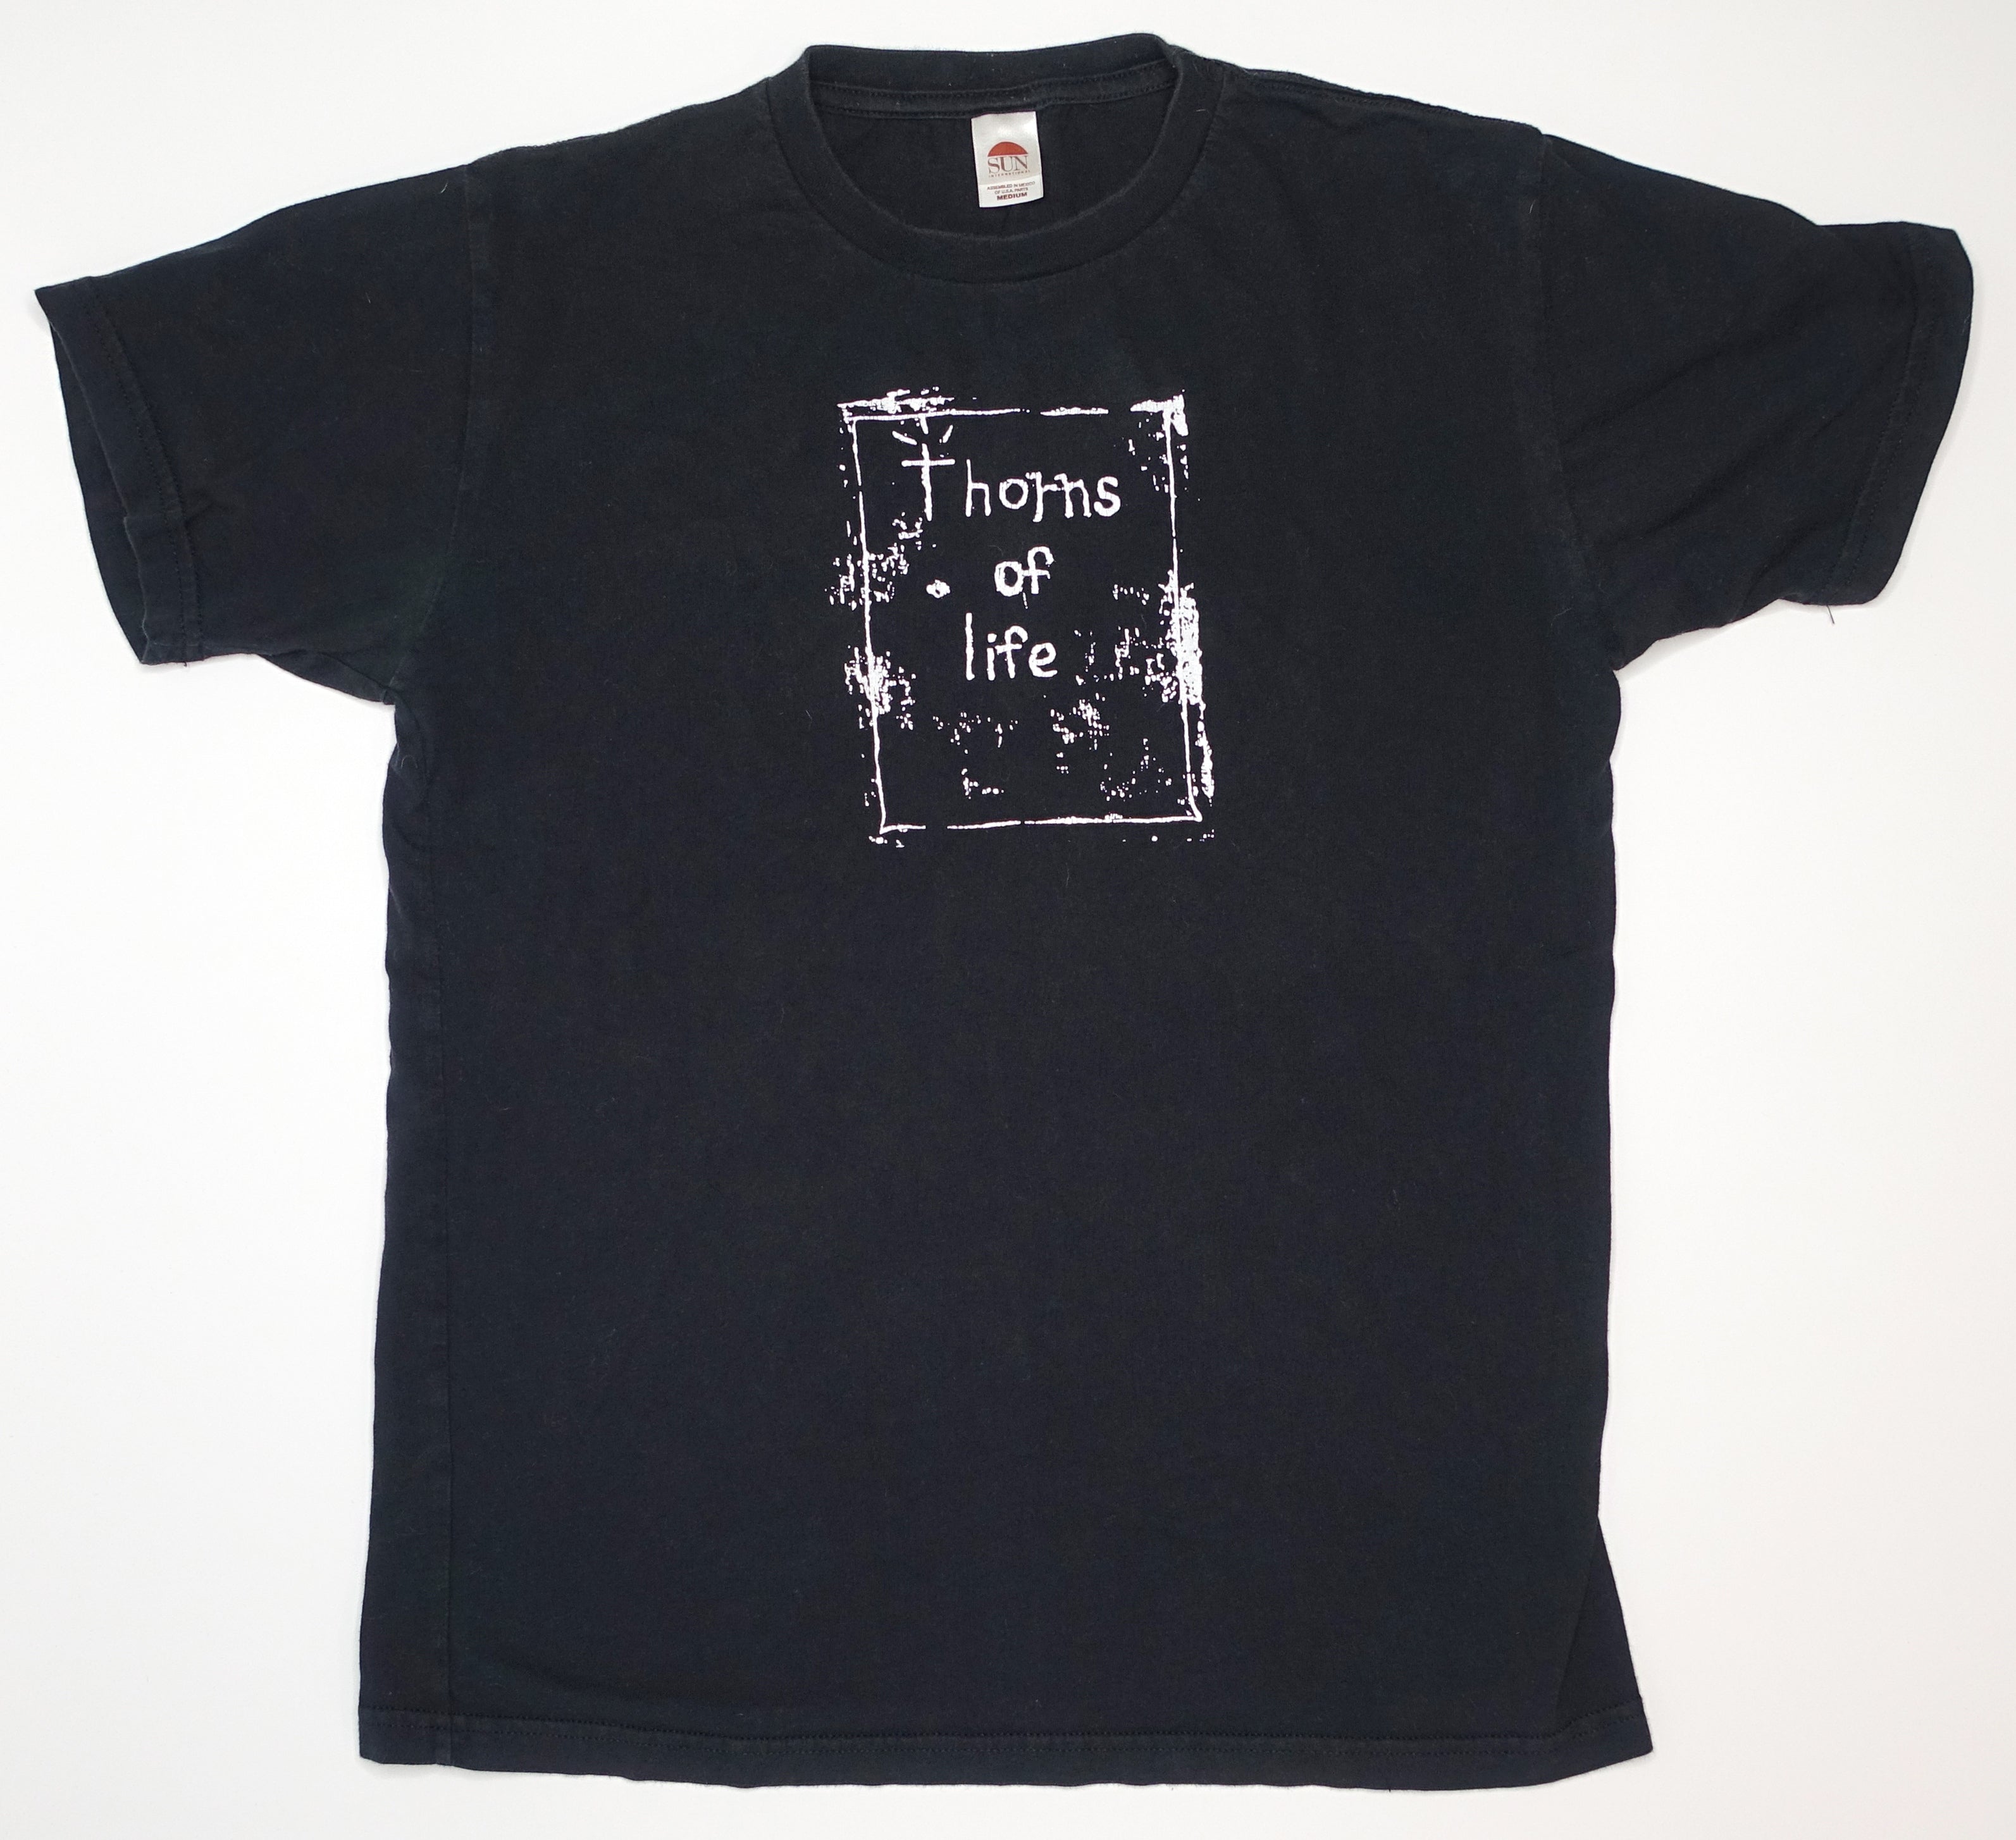 Thorns Of Life - Thorns Of Life Rectangle 2009 Tour Shirt Size Medium